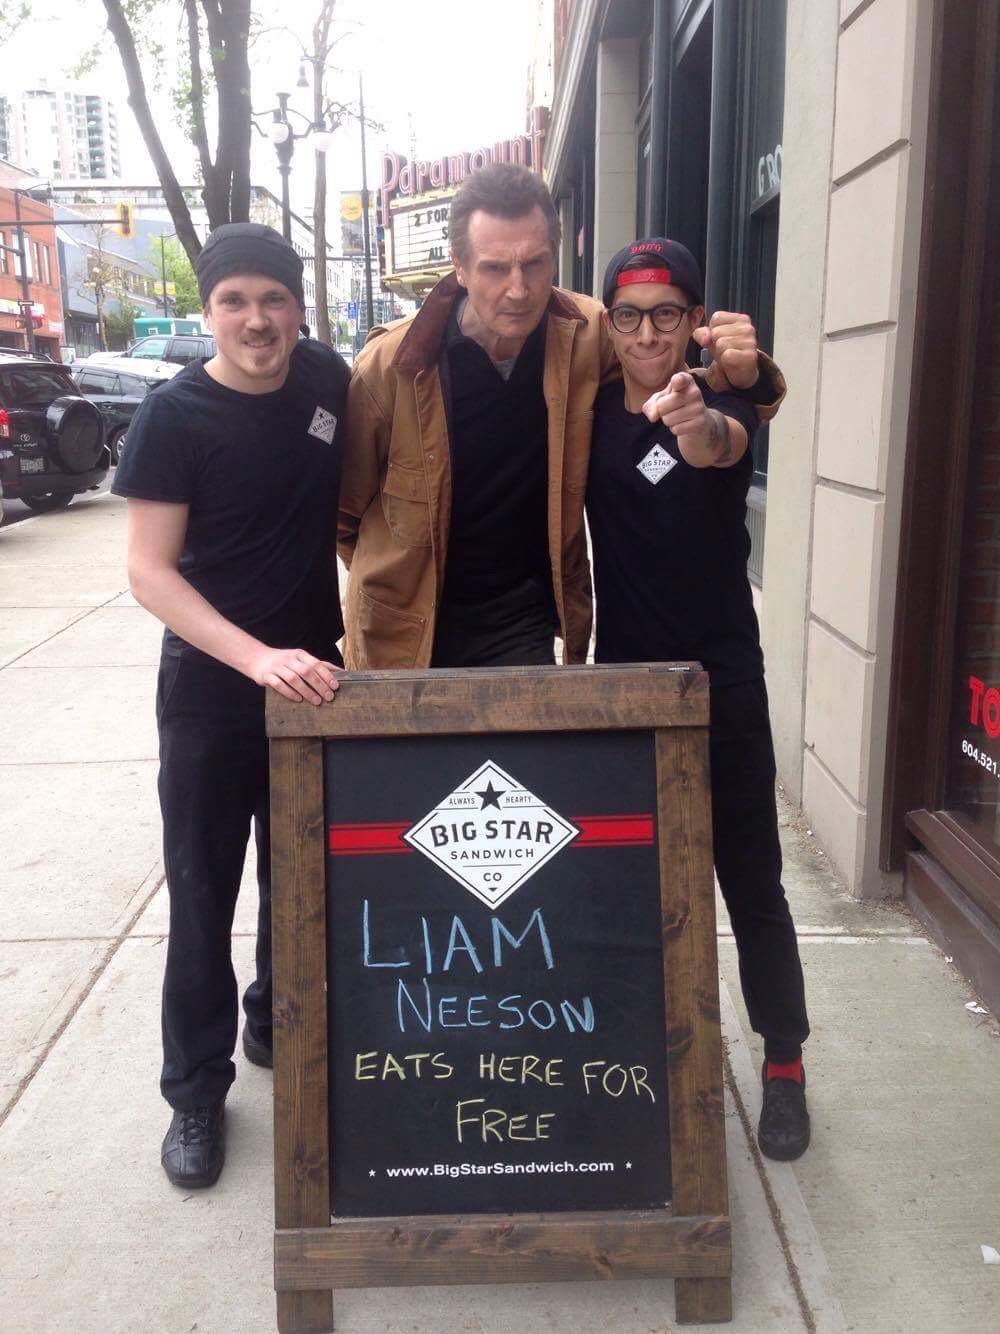 Une sandwicherie propose à Liam Neeson un repas gratuit, il fait le déplacement